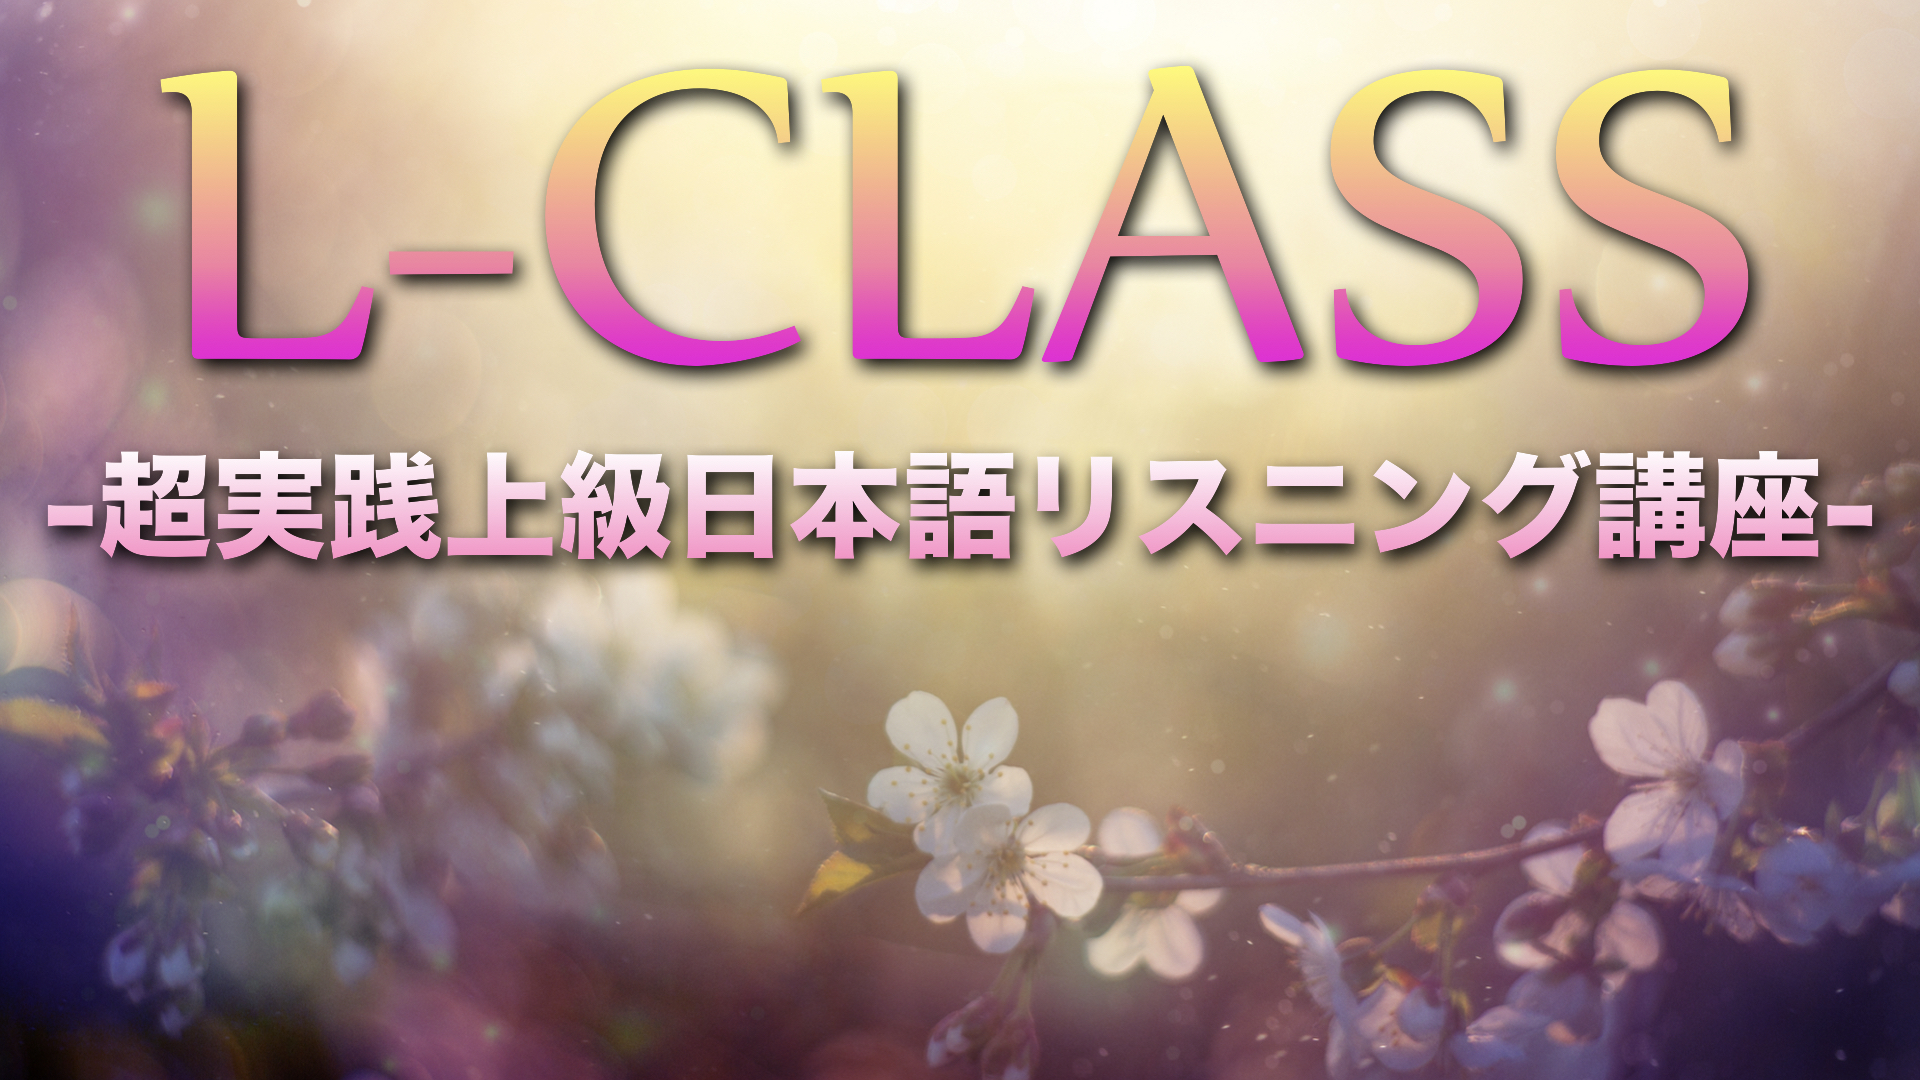 L-CLASS(中日)